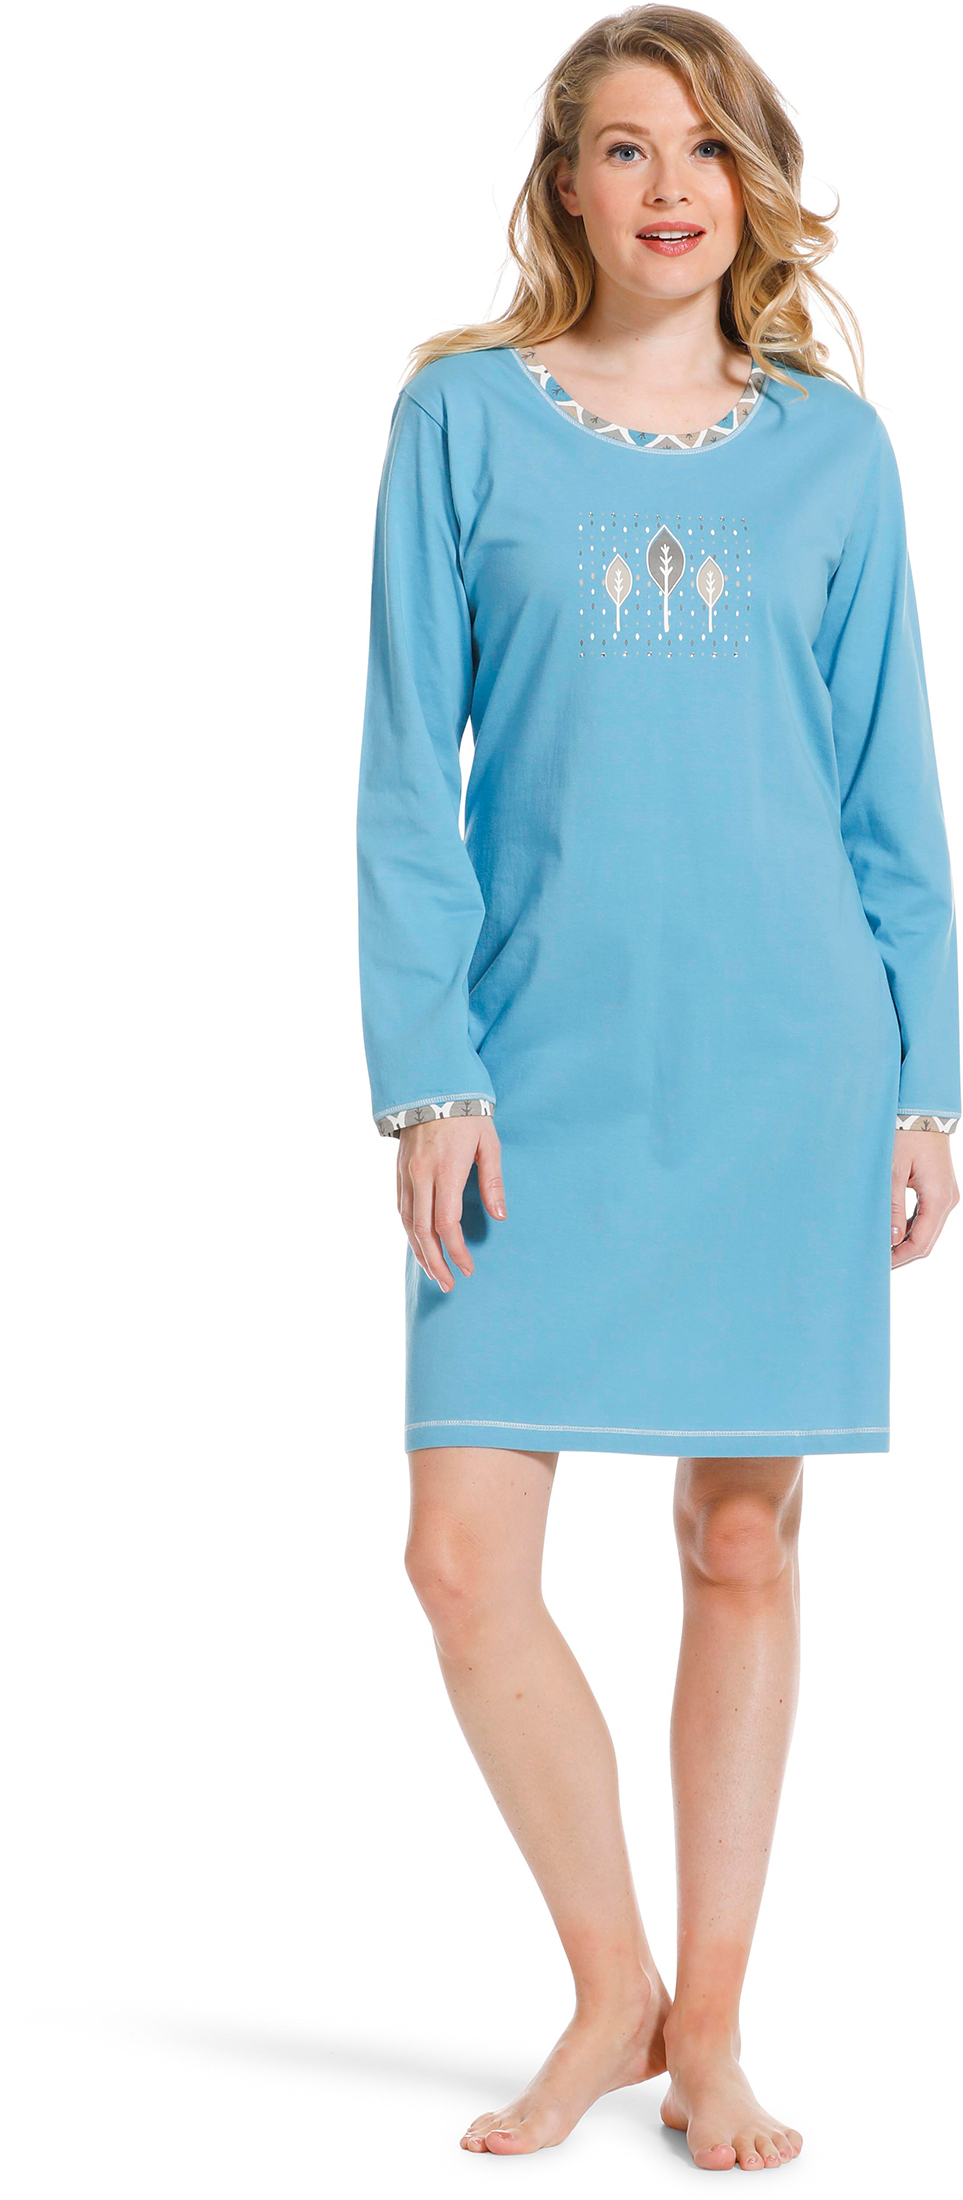 Pastunette dames nachthemd 10222-138-2 - Blauw - 36